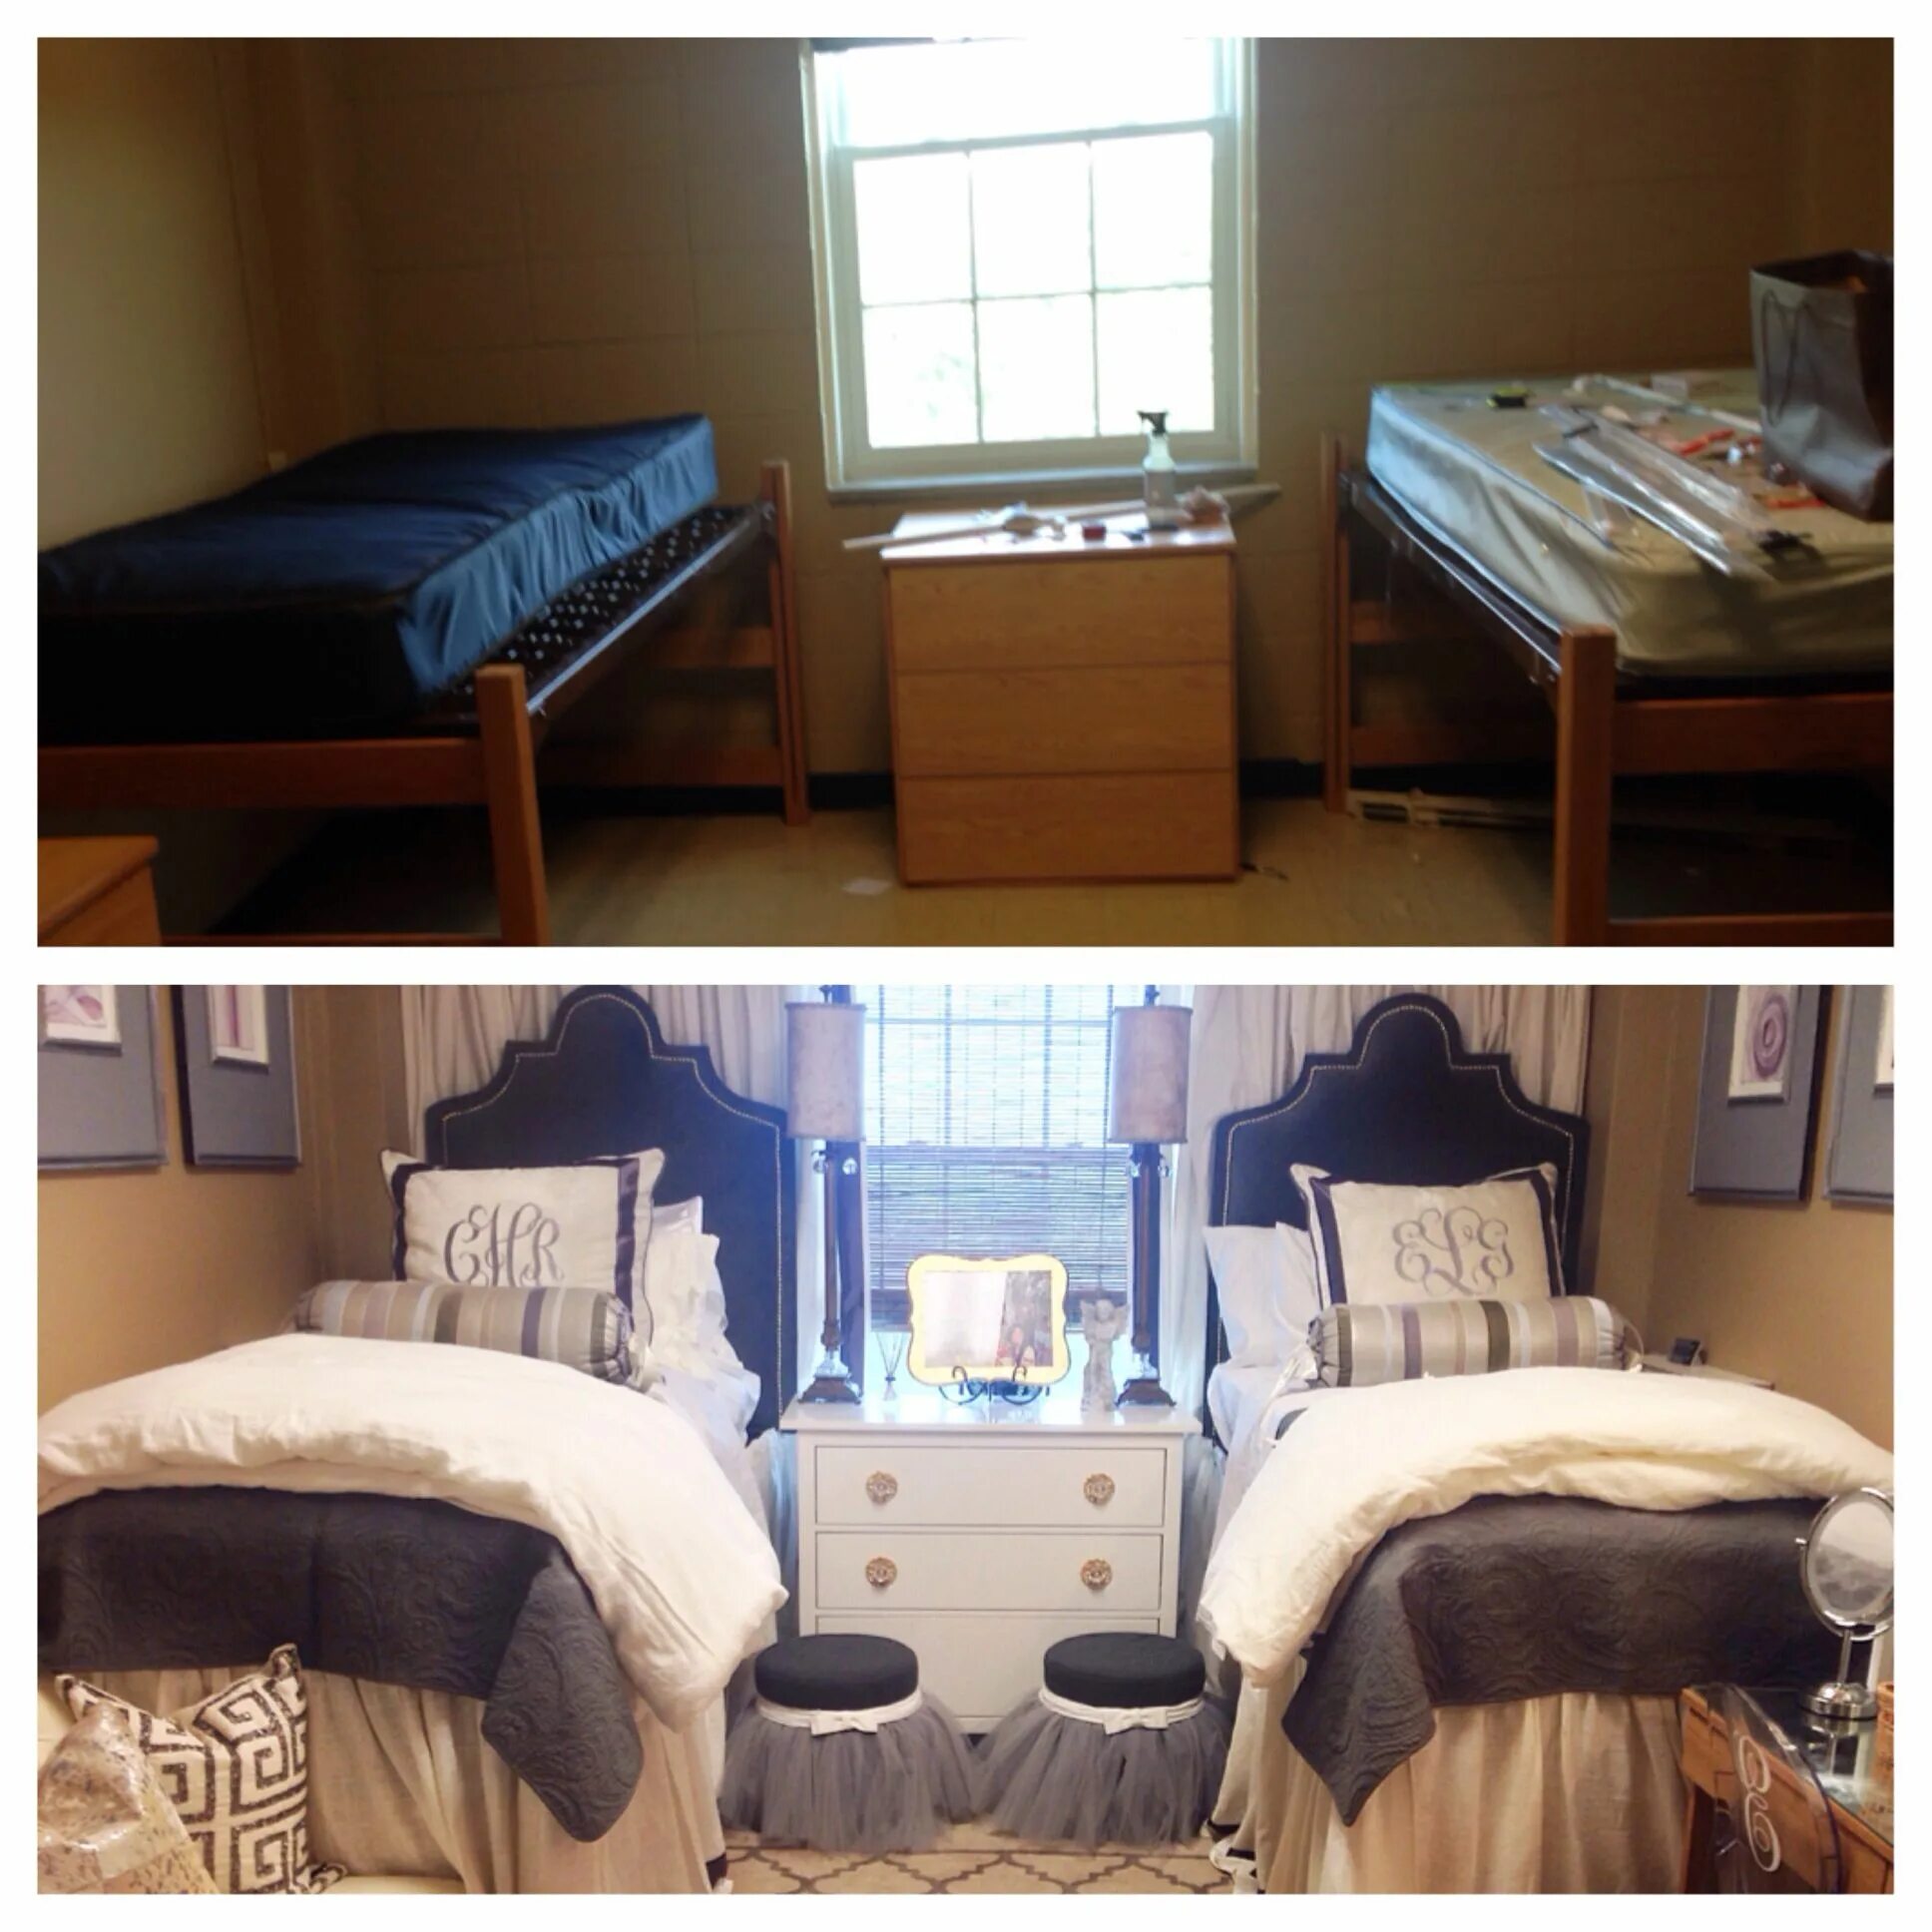 Девушка после общежития. Комната в общаге до и после ремонта. Ремонт в общежитии до и после. Dorm Room before after. Ремонт комнаты в общежитии до после.